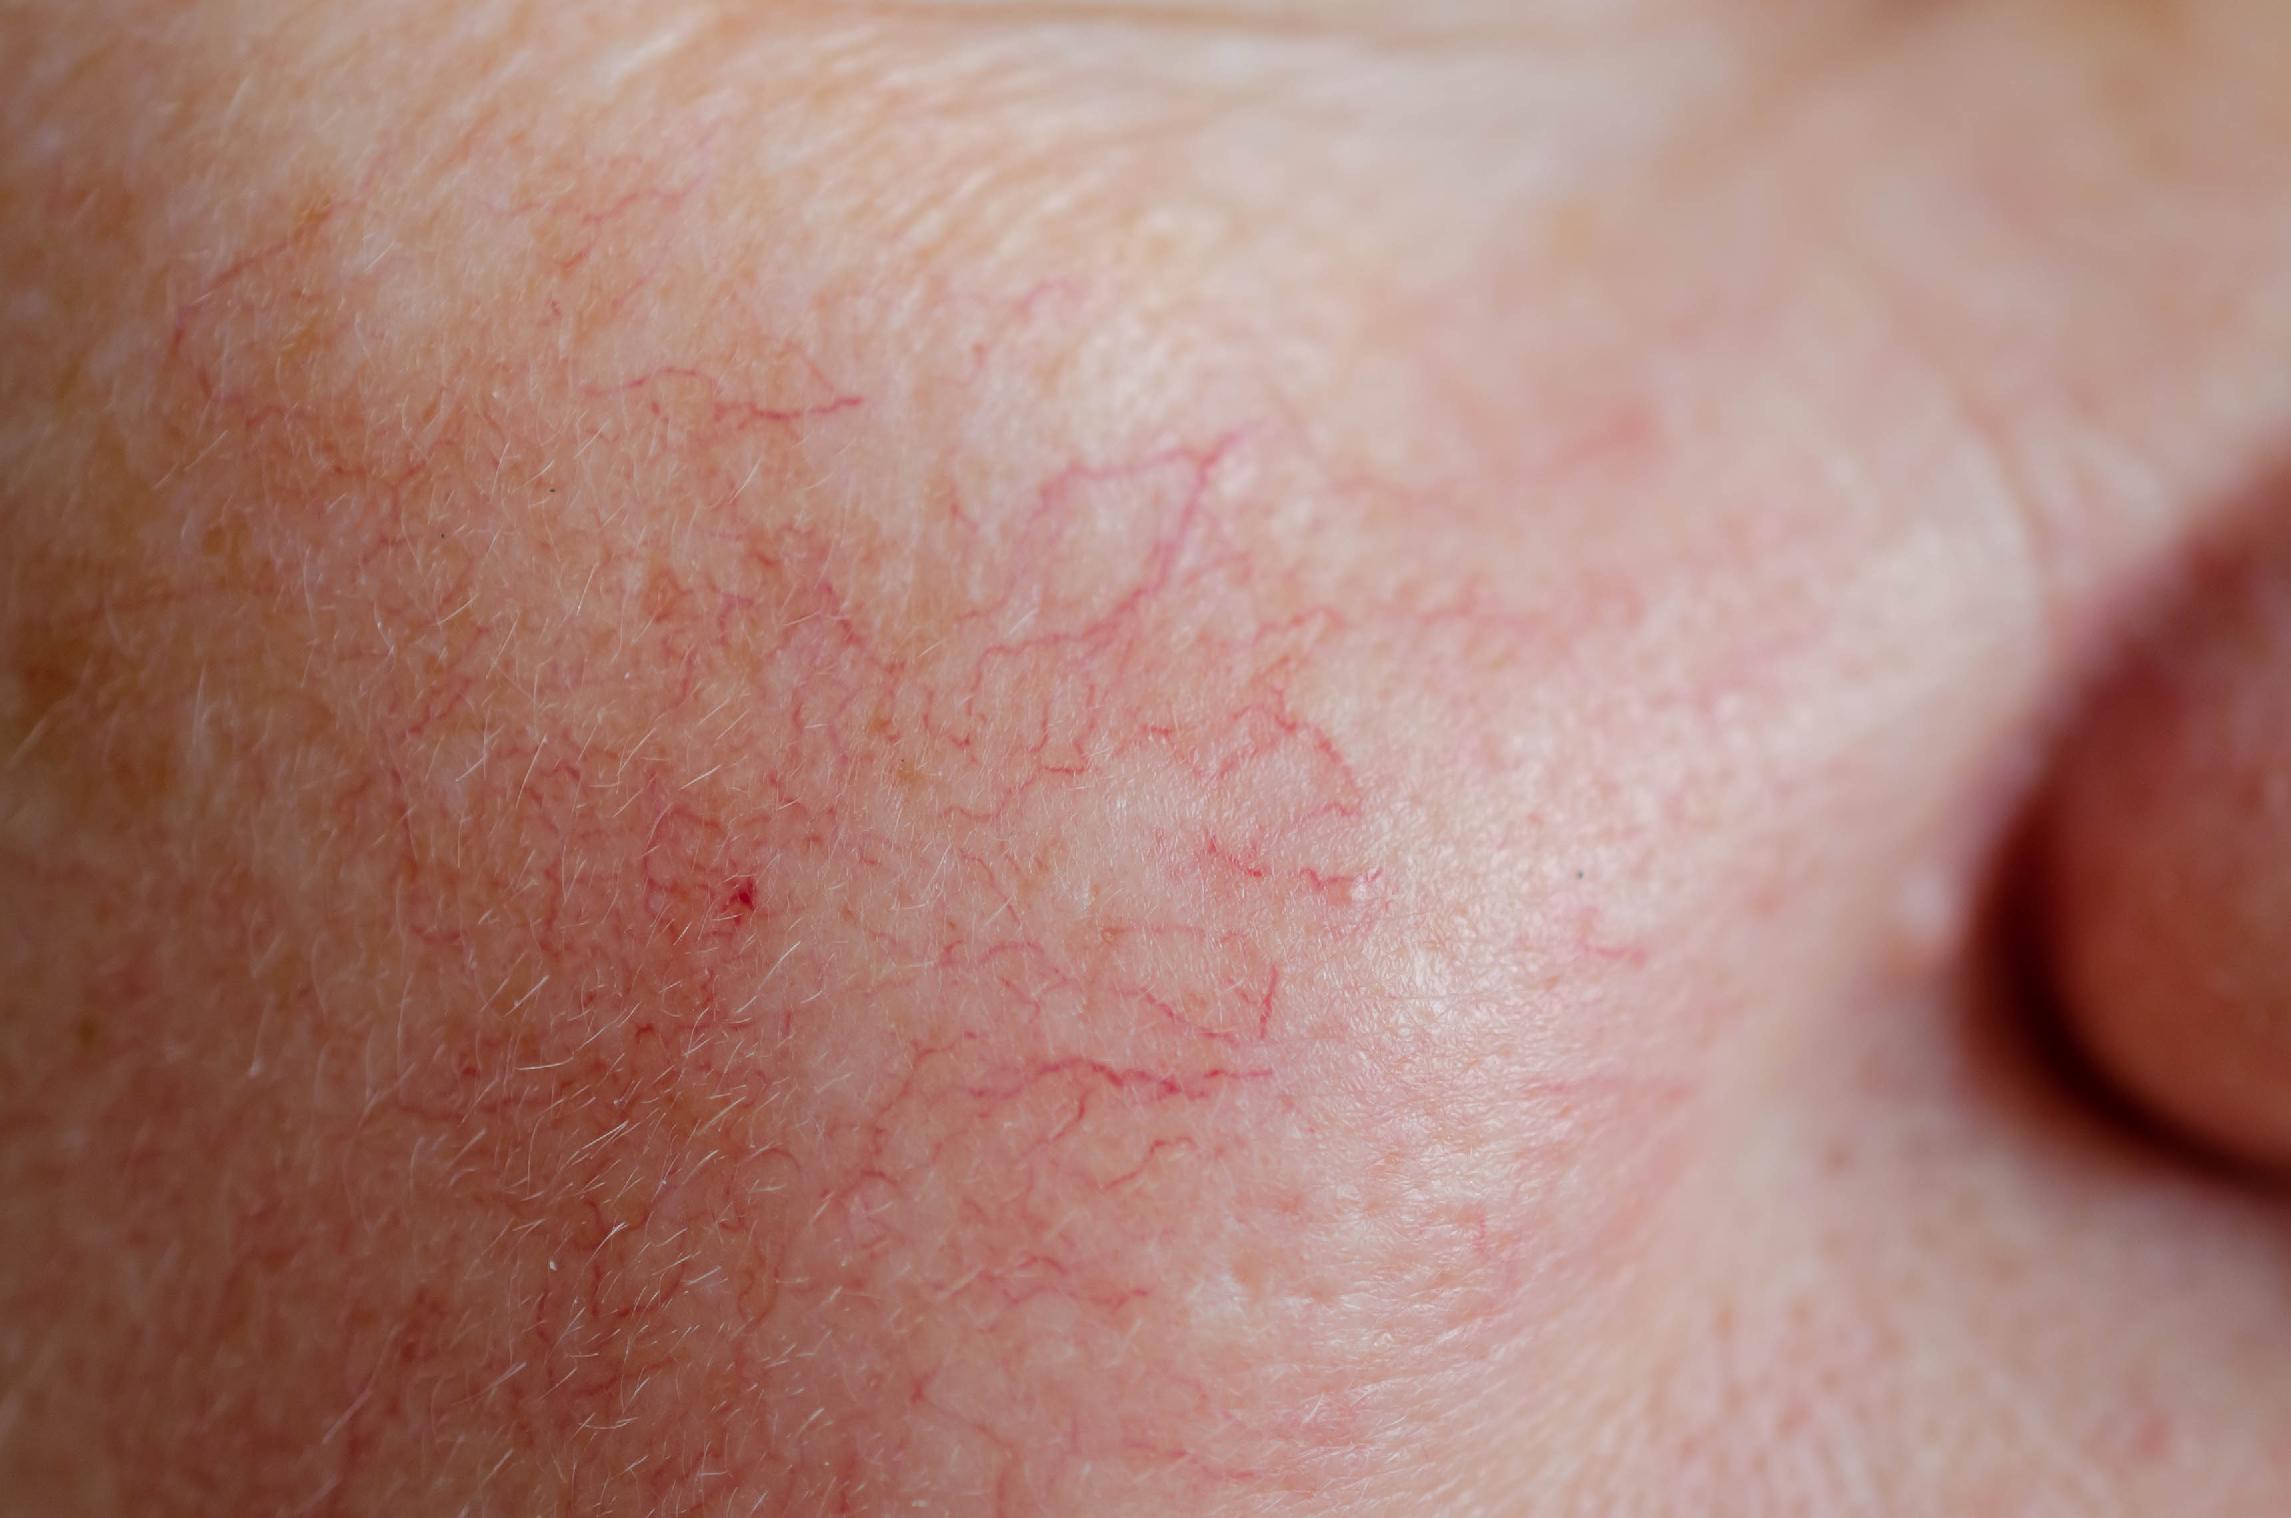 怎么移除红色痘印 蓝光诊治让肌肤白净光滑